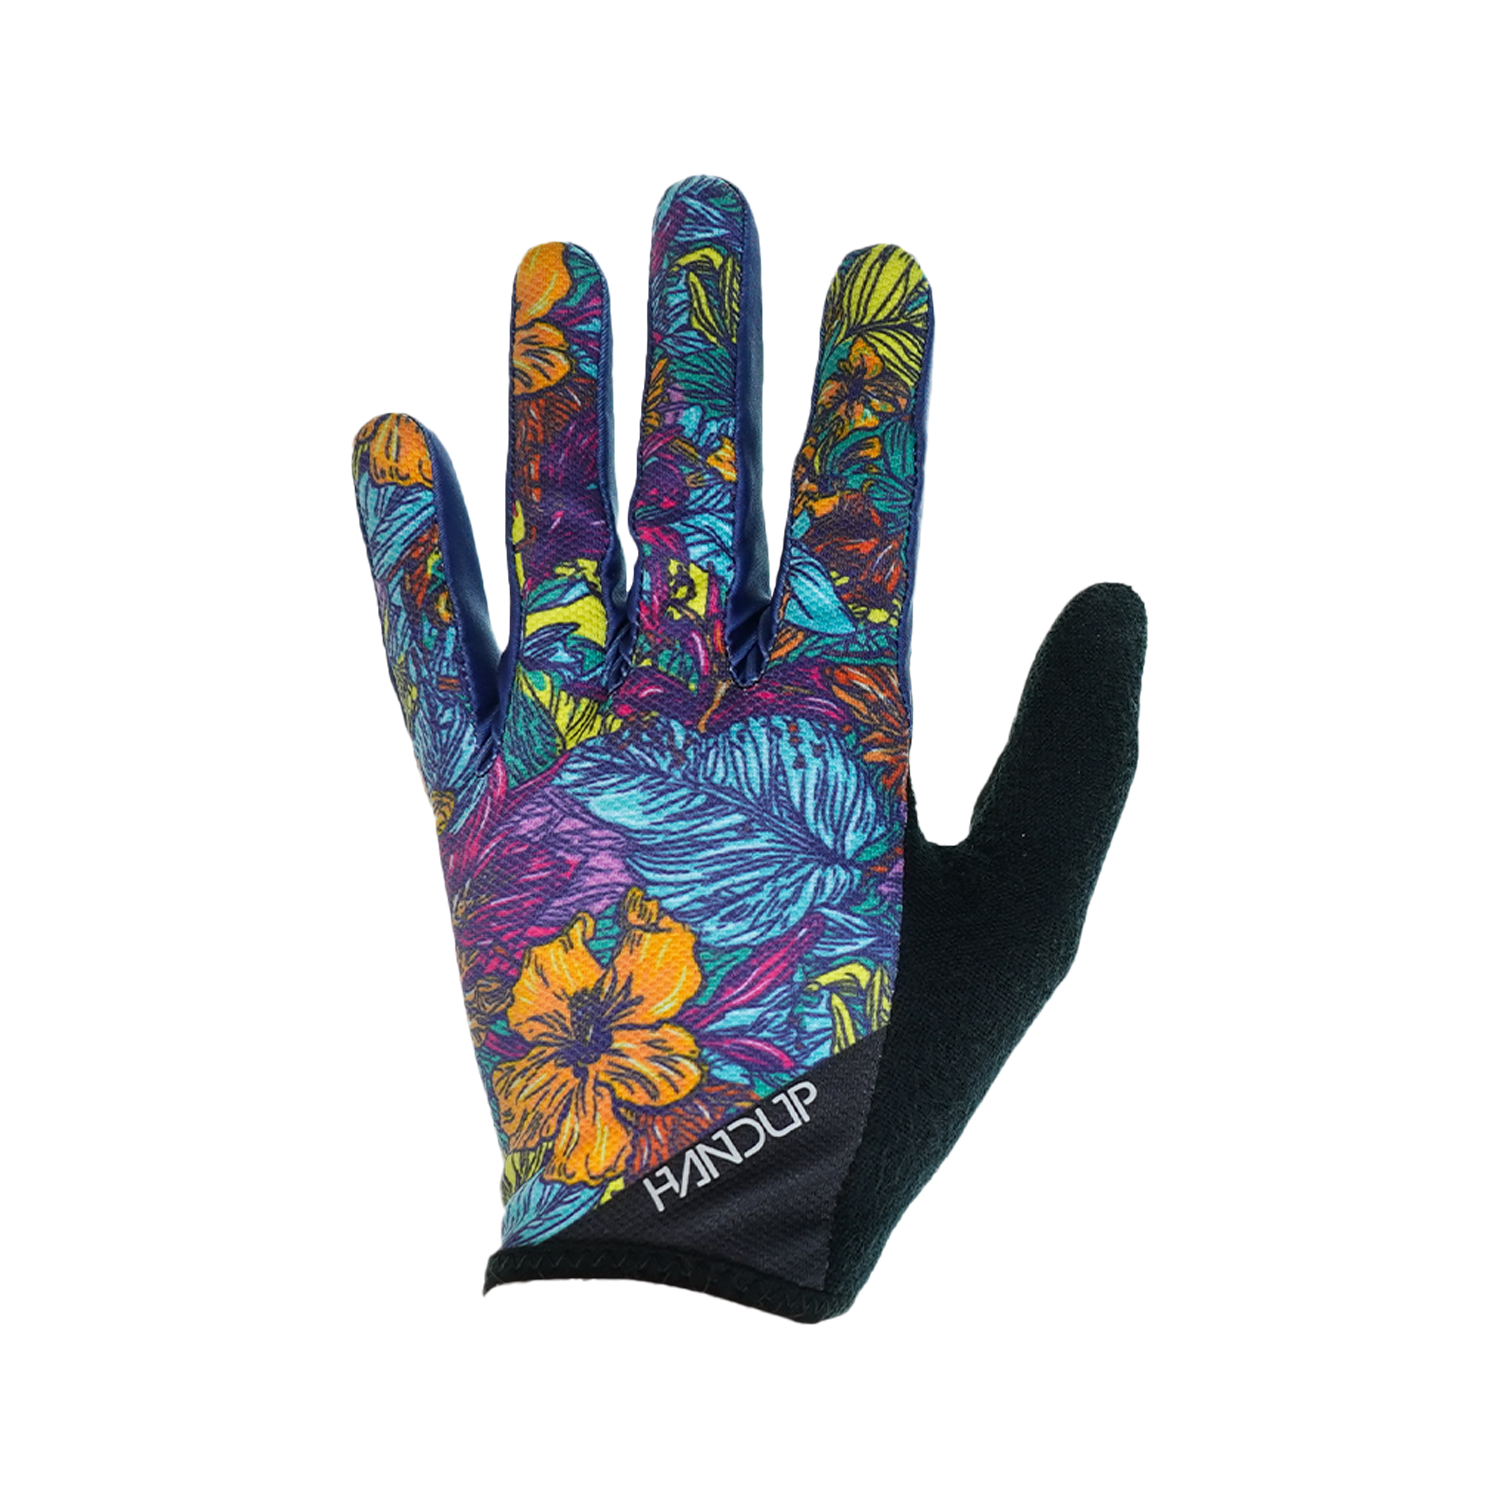 Gloves - Dirt Surfin' Floral